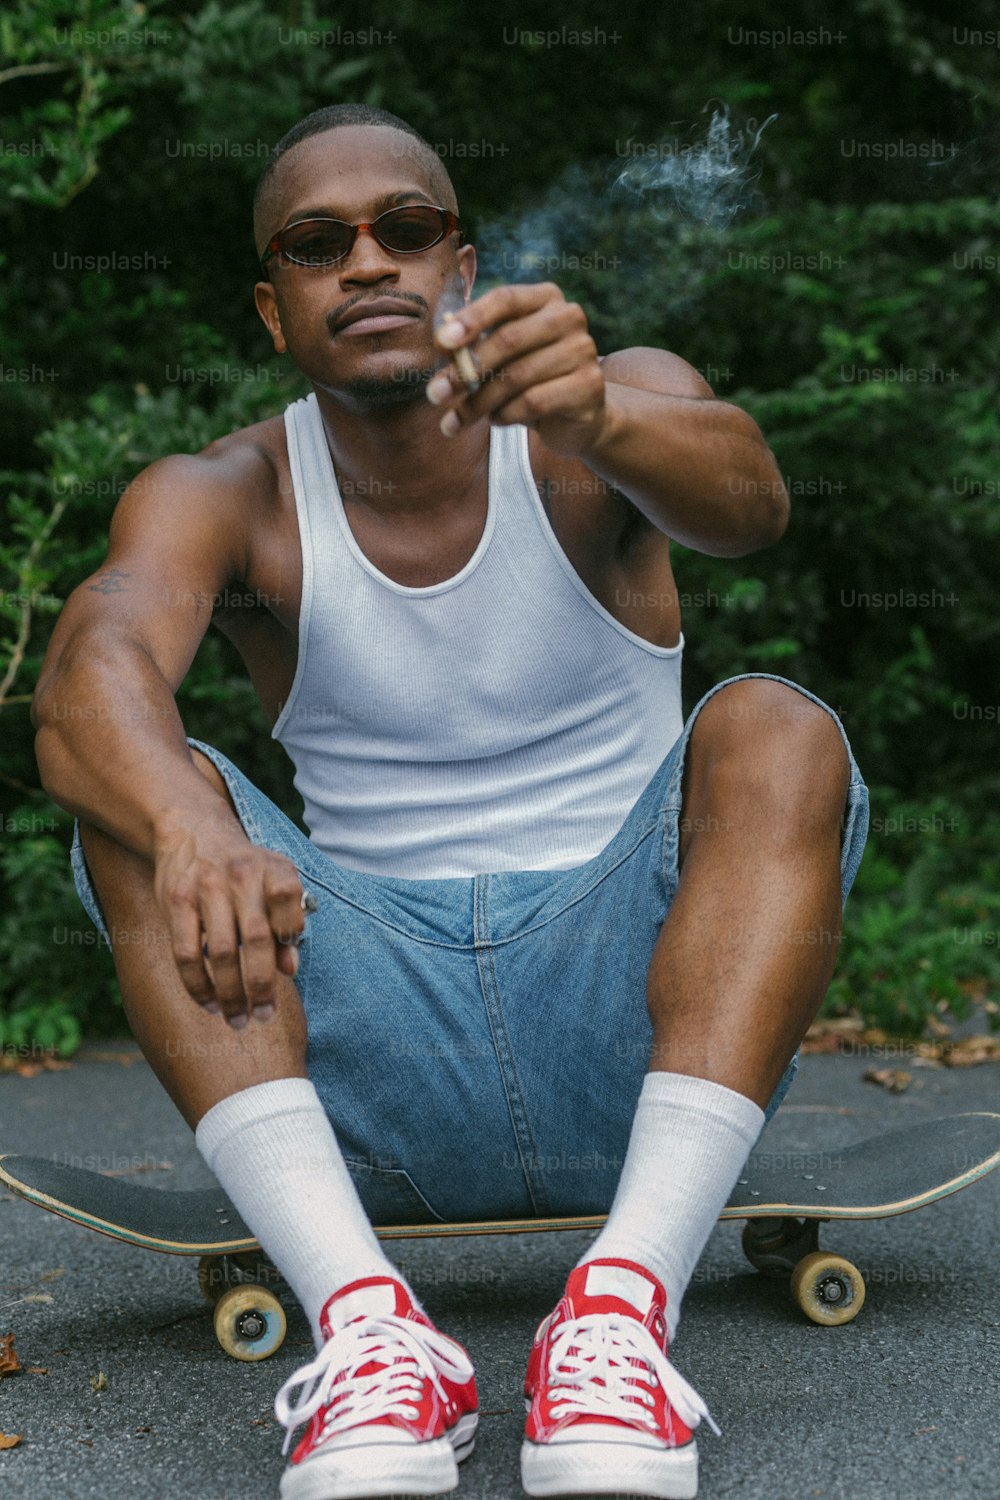 Ein Mann, der auf einem Skateboard sitzt und eine Zigarette raucht